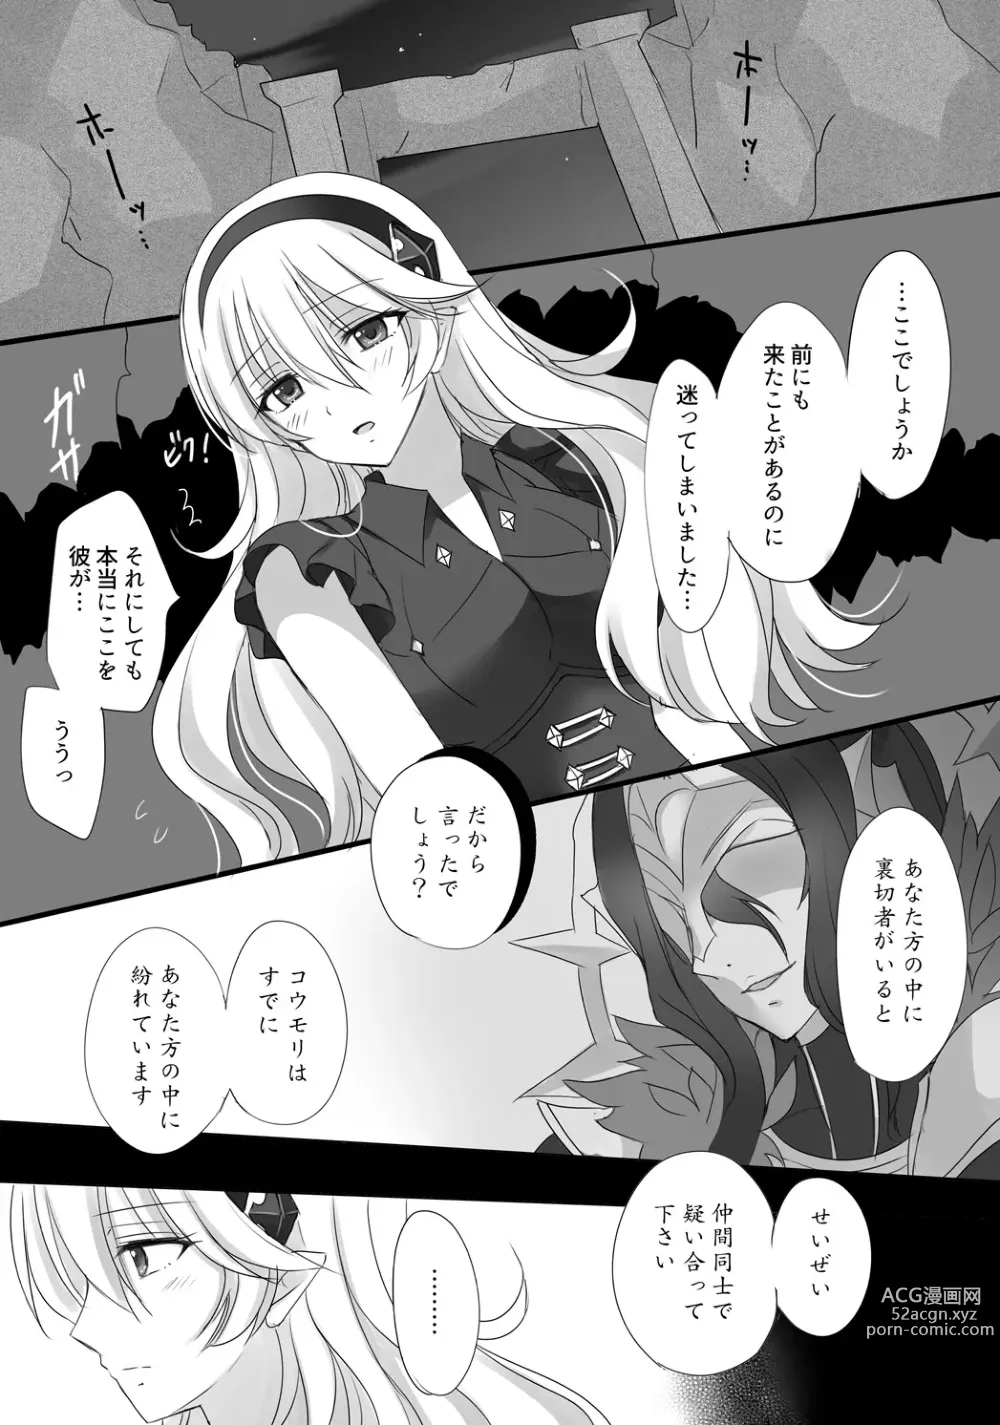 Page 2 of doujinshi FEif takukamu manga sanpuru `tengoku yori yaban zenpen[R 18]Fire Emblem: Three Houses)